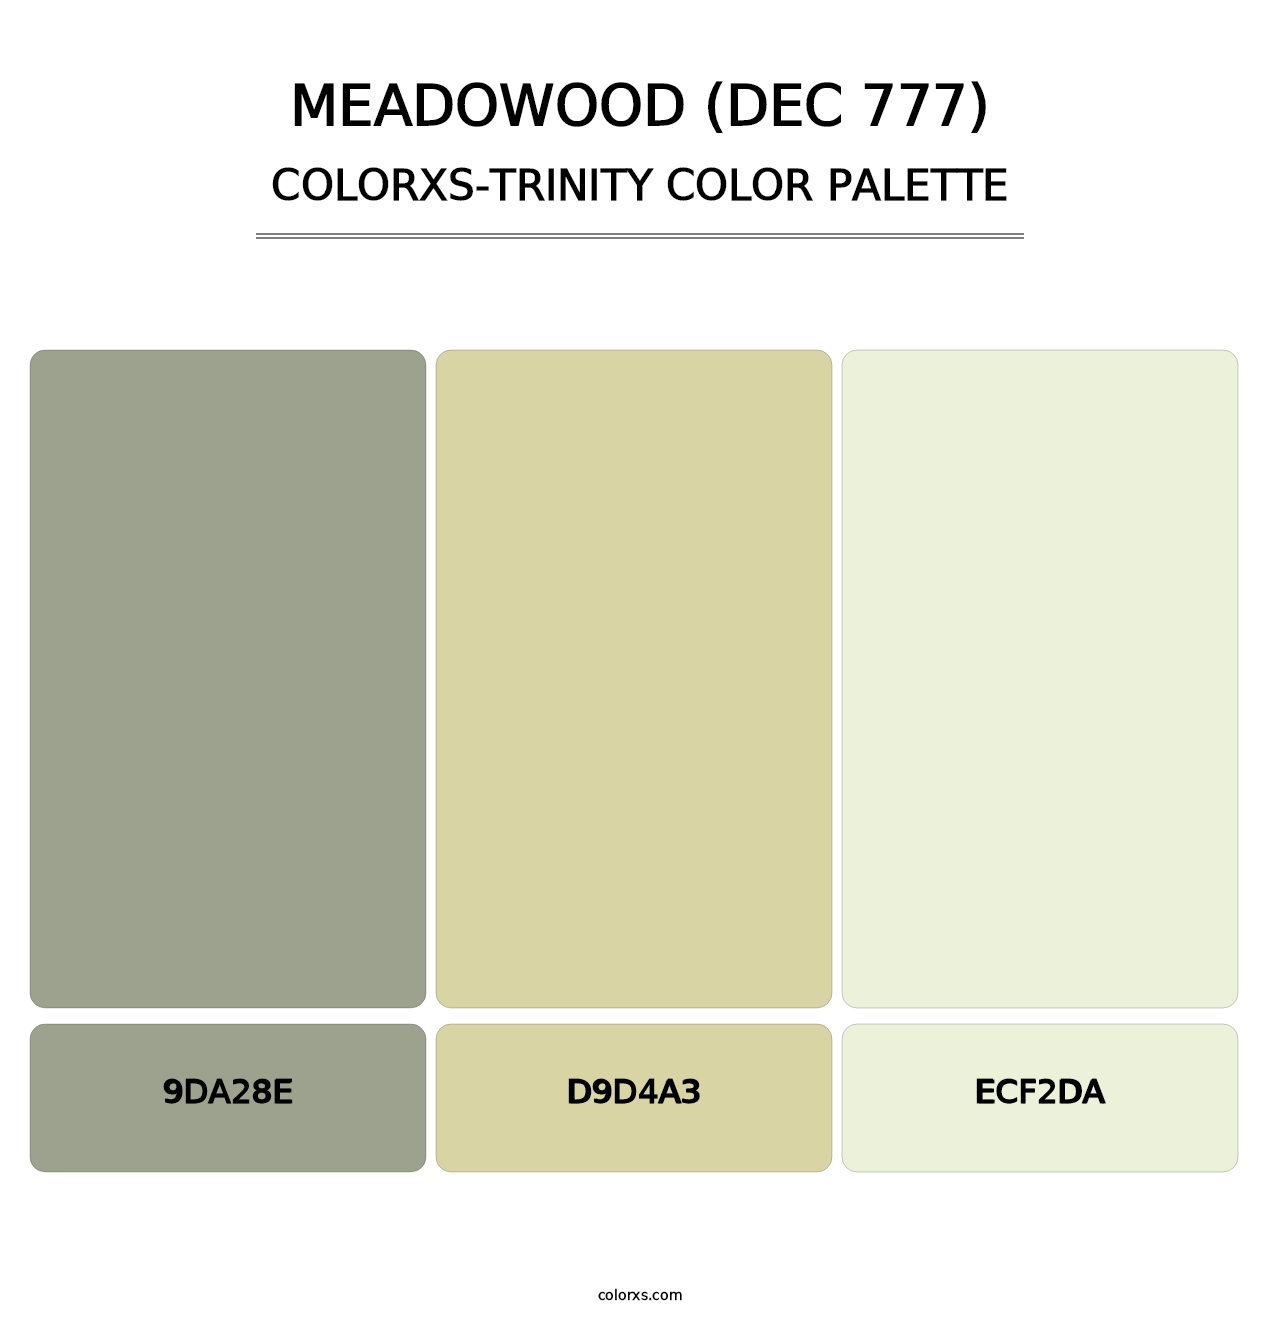 Meadowood (DEC 777) - Colorxs Trinity Palette